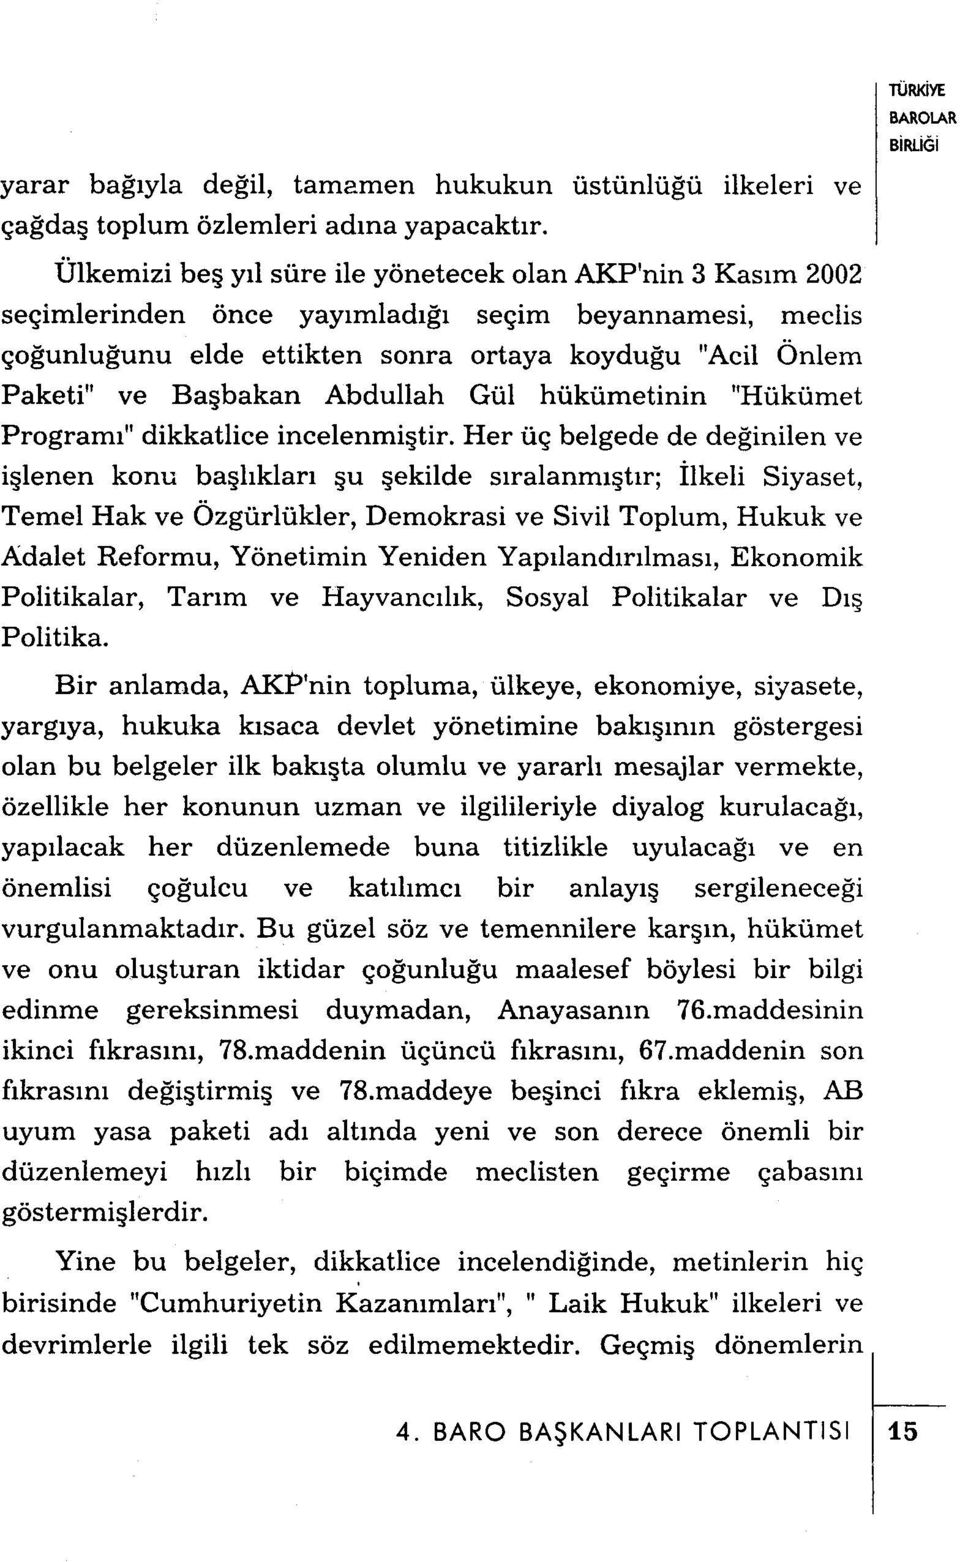 Abdullah Gül hükümetinin "Hükümet Programı" dikkatlice incelenmiştir.